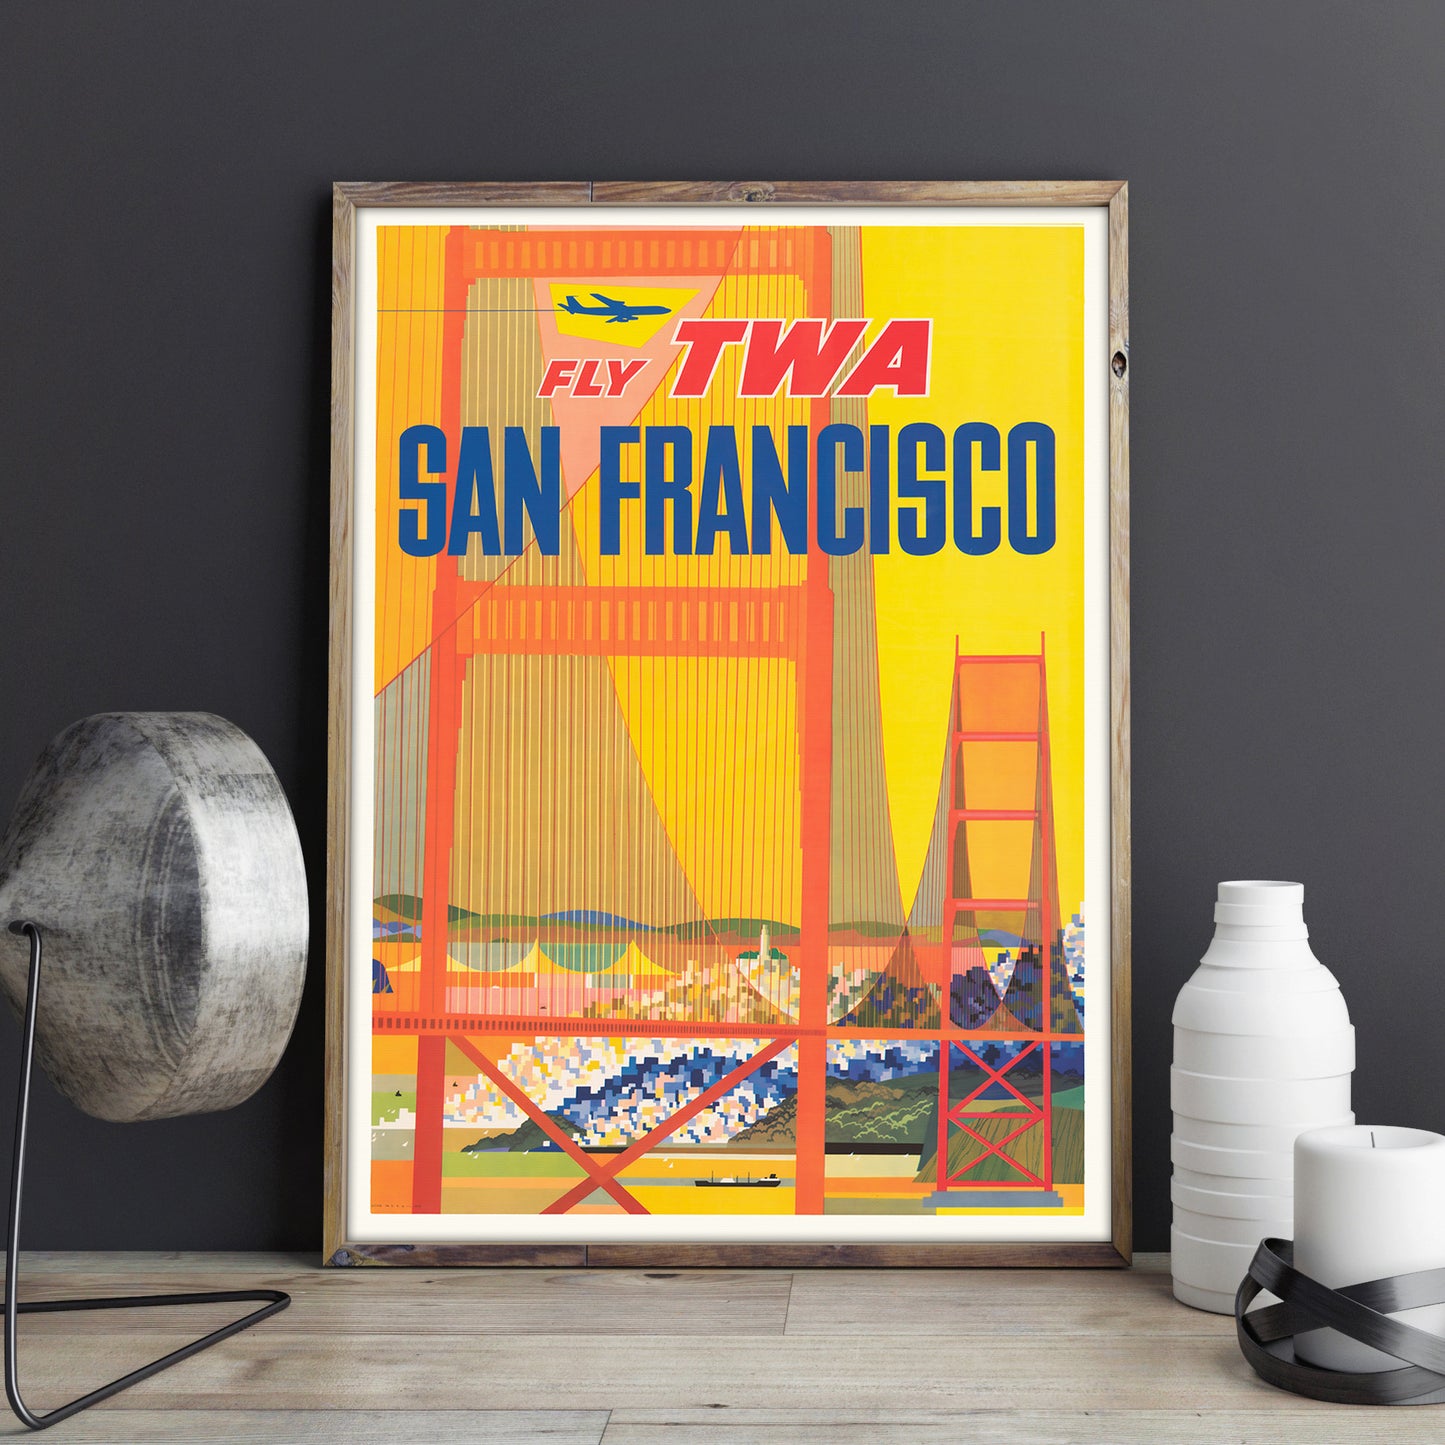 San Francisco Rejseplakat, med Fly TWA